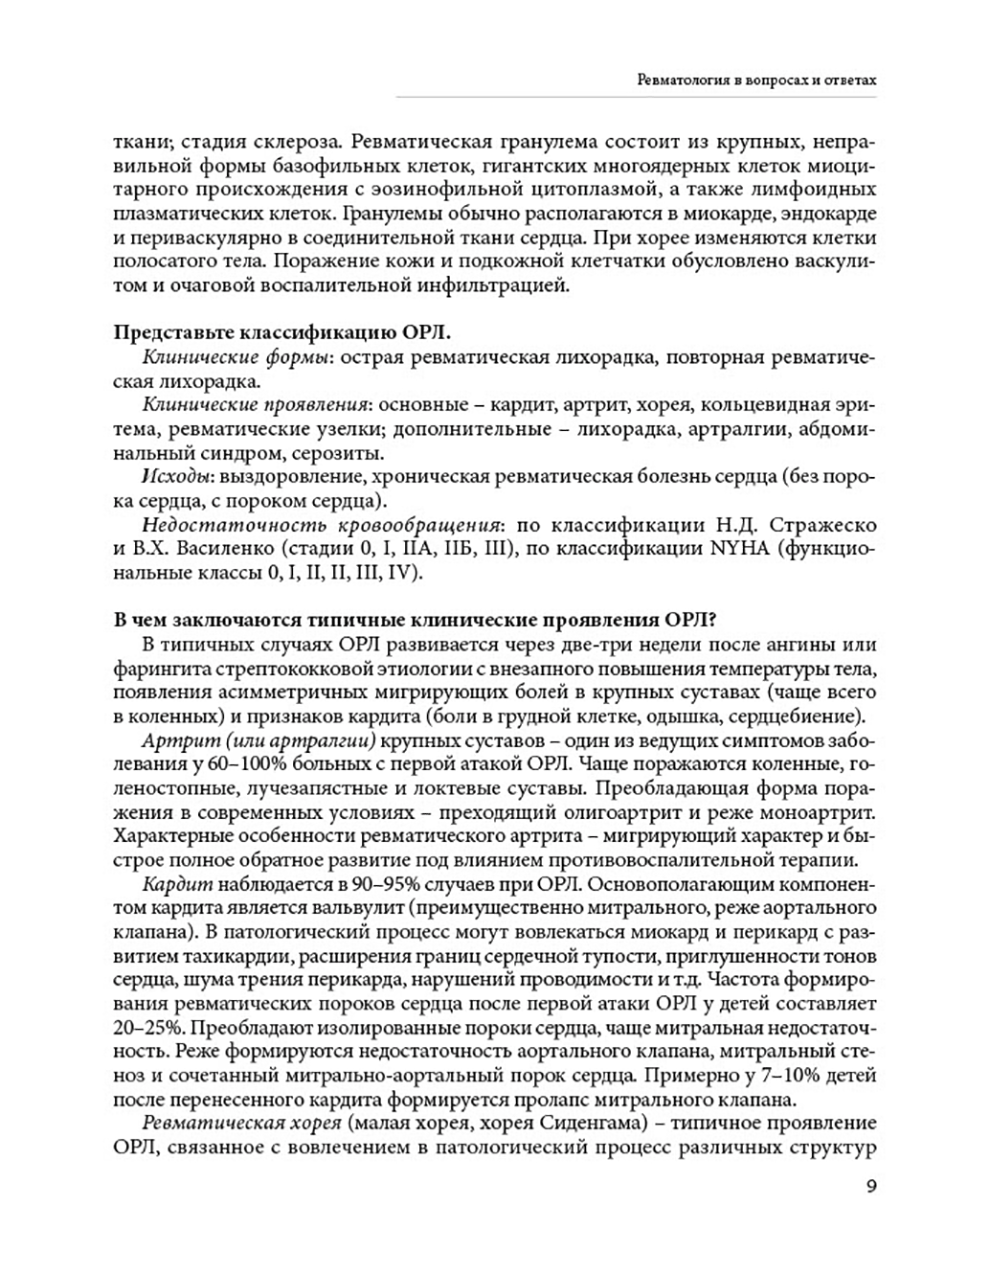 Пример страницы из книги "Ревматология в вопросах и ответах" - Мазуров В. И., Беляева И. Б.